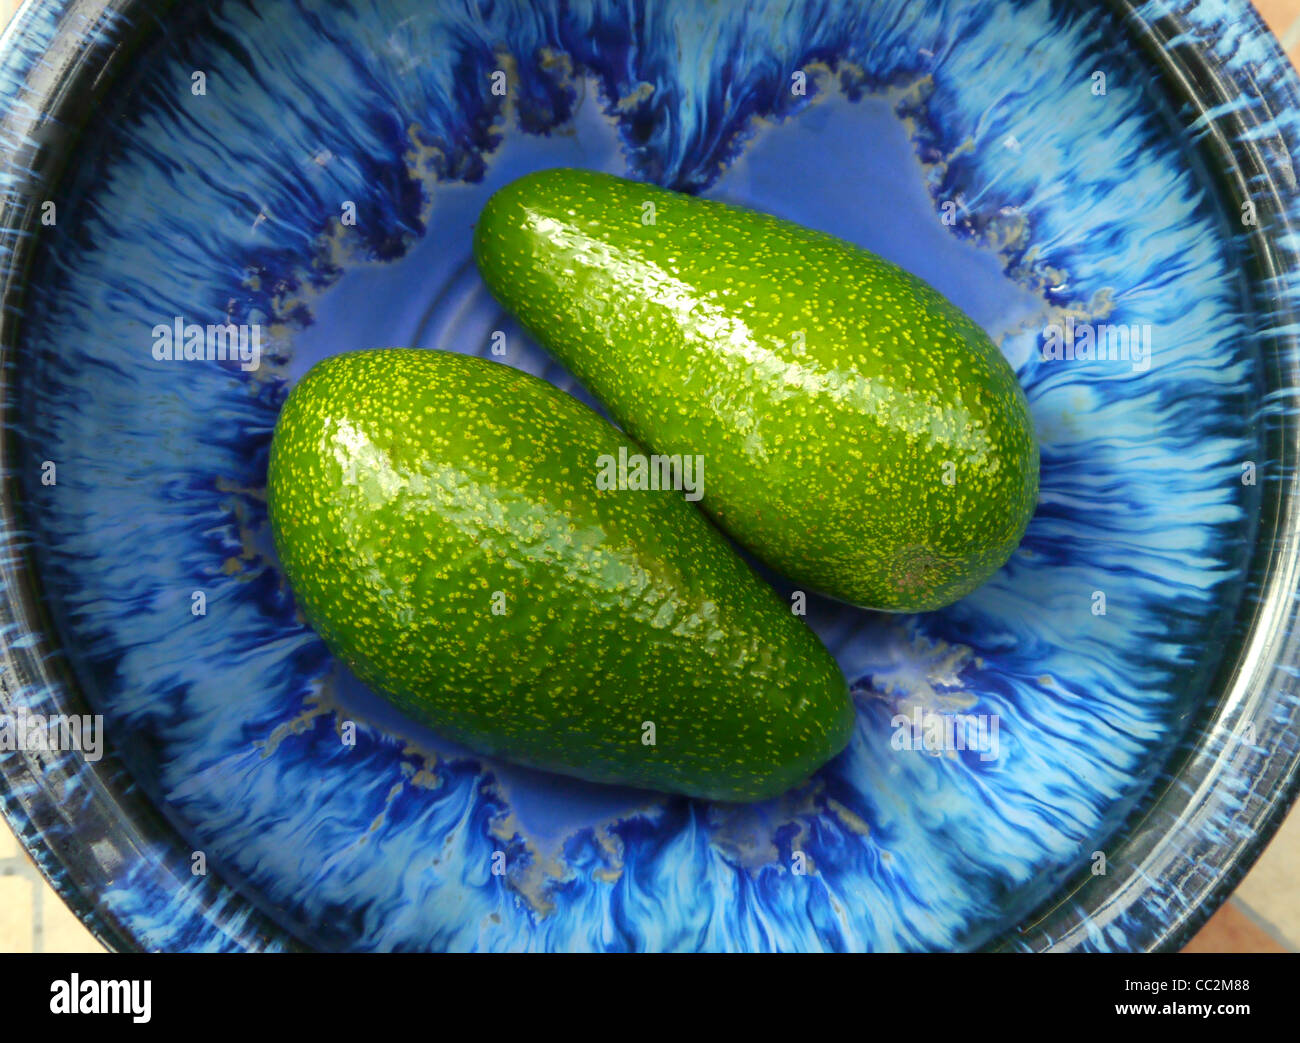 Zwei Avocados in einer blauen Schüssel Stockfoto